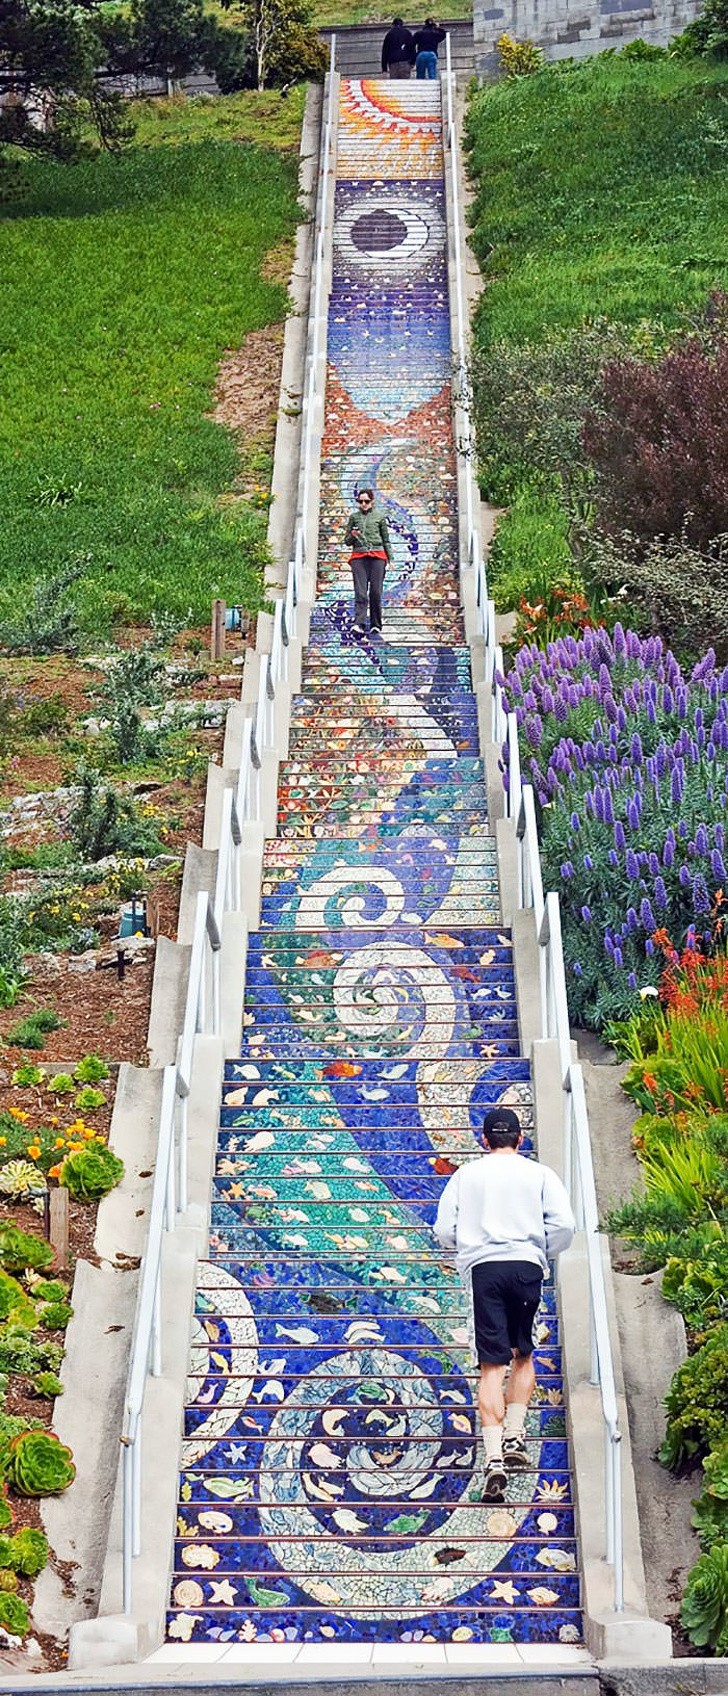 8. Die Mosaike von Aileen Barr und Colette Crutcher auf der Treppe von San Francisco.